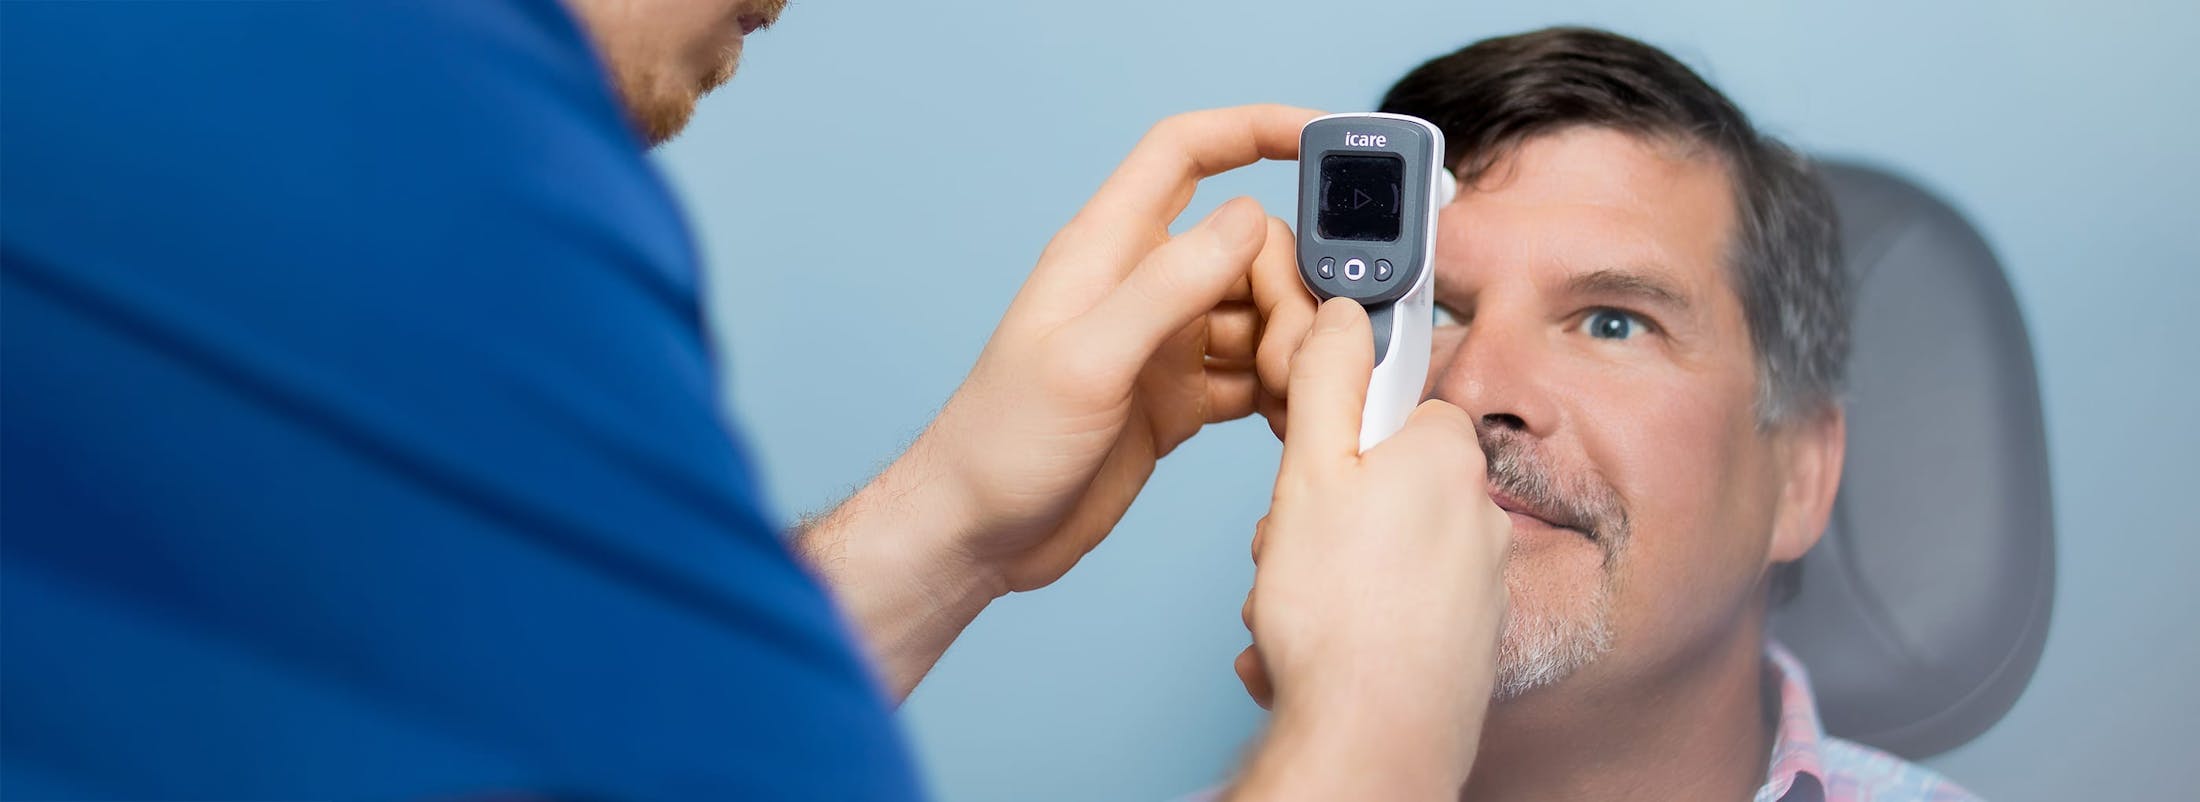 Patient receiving eye allergy exam